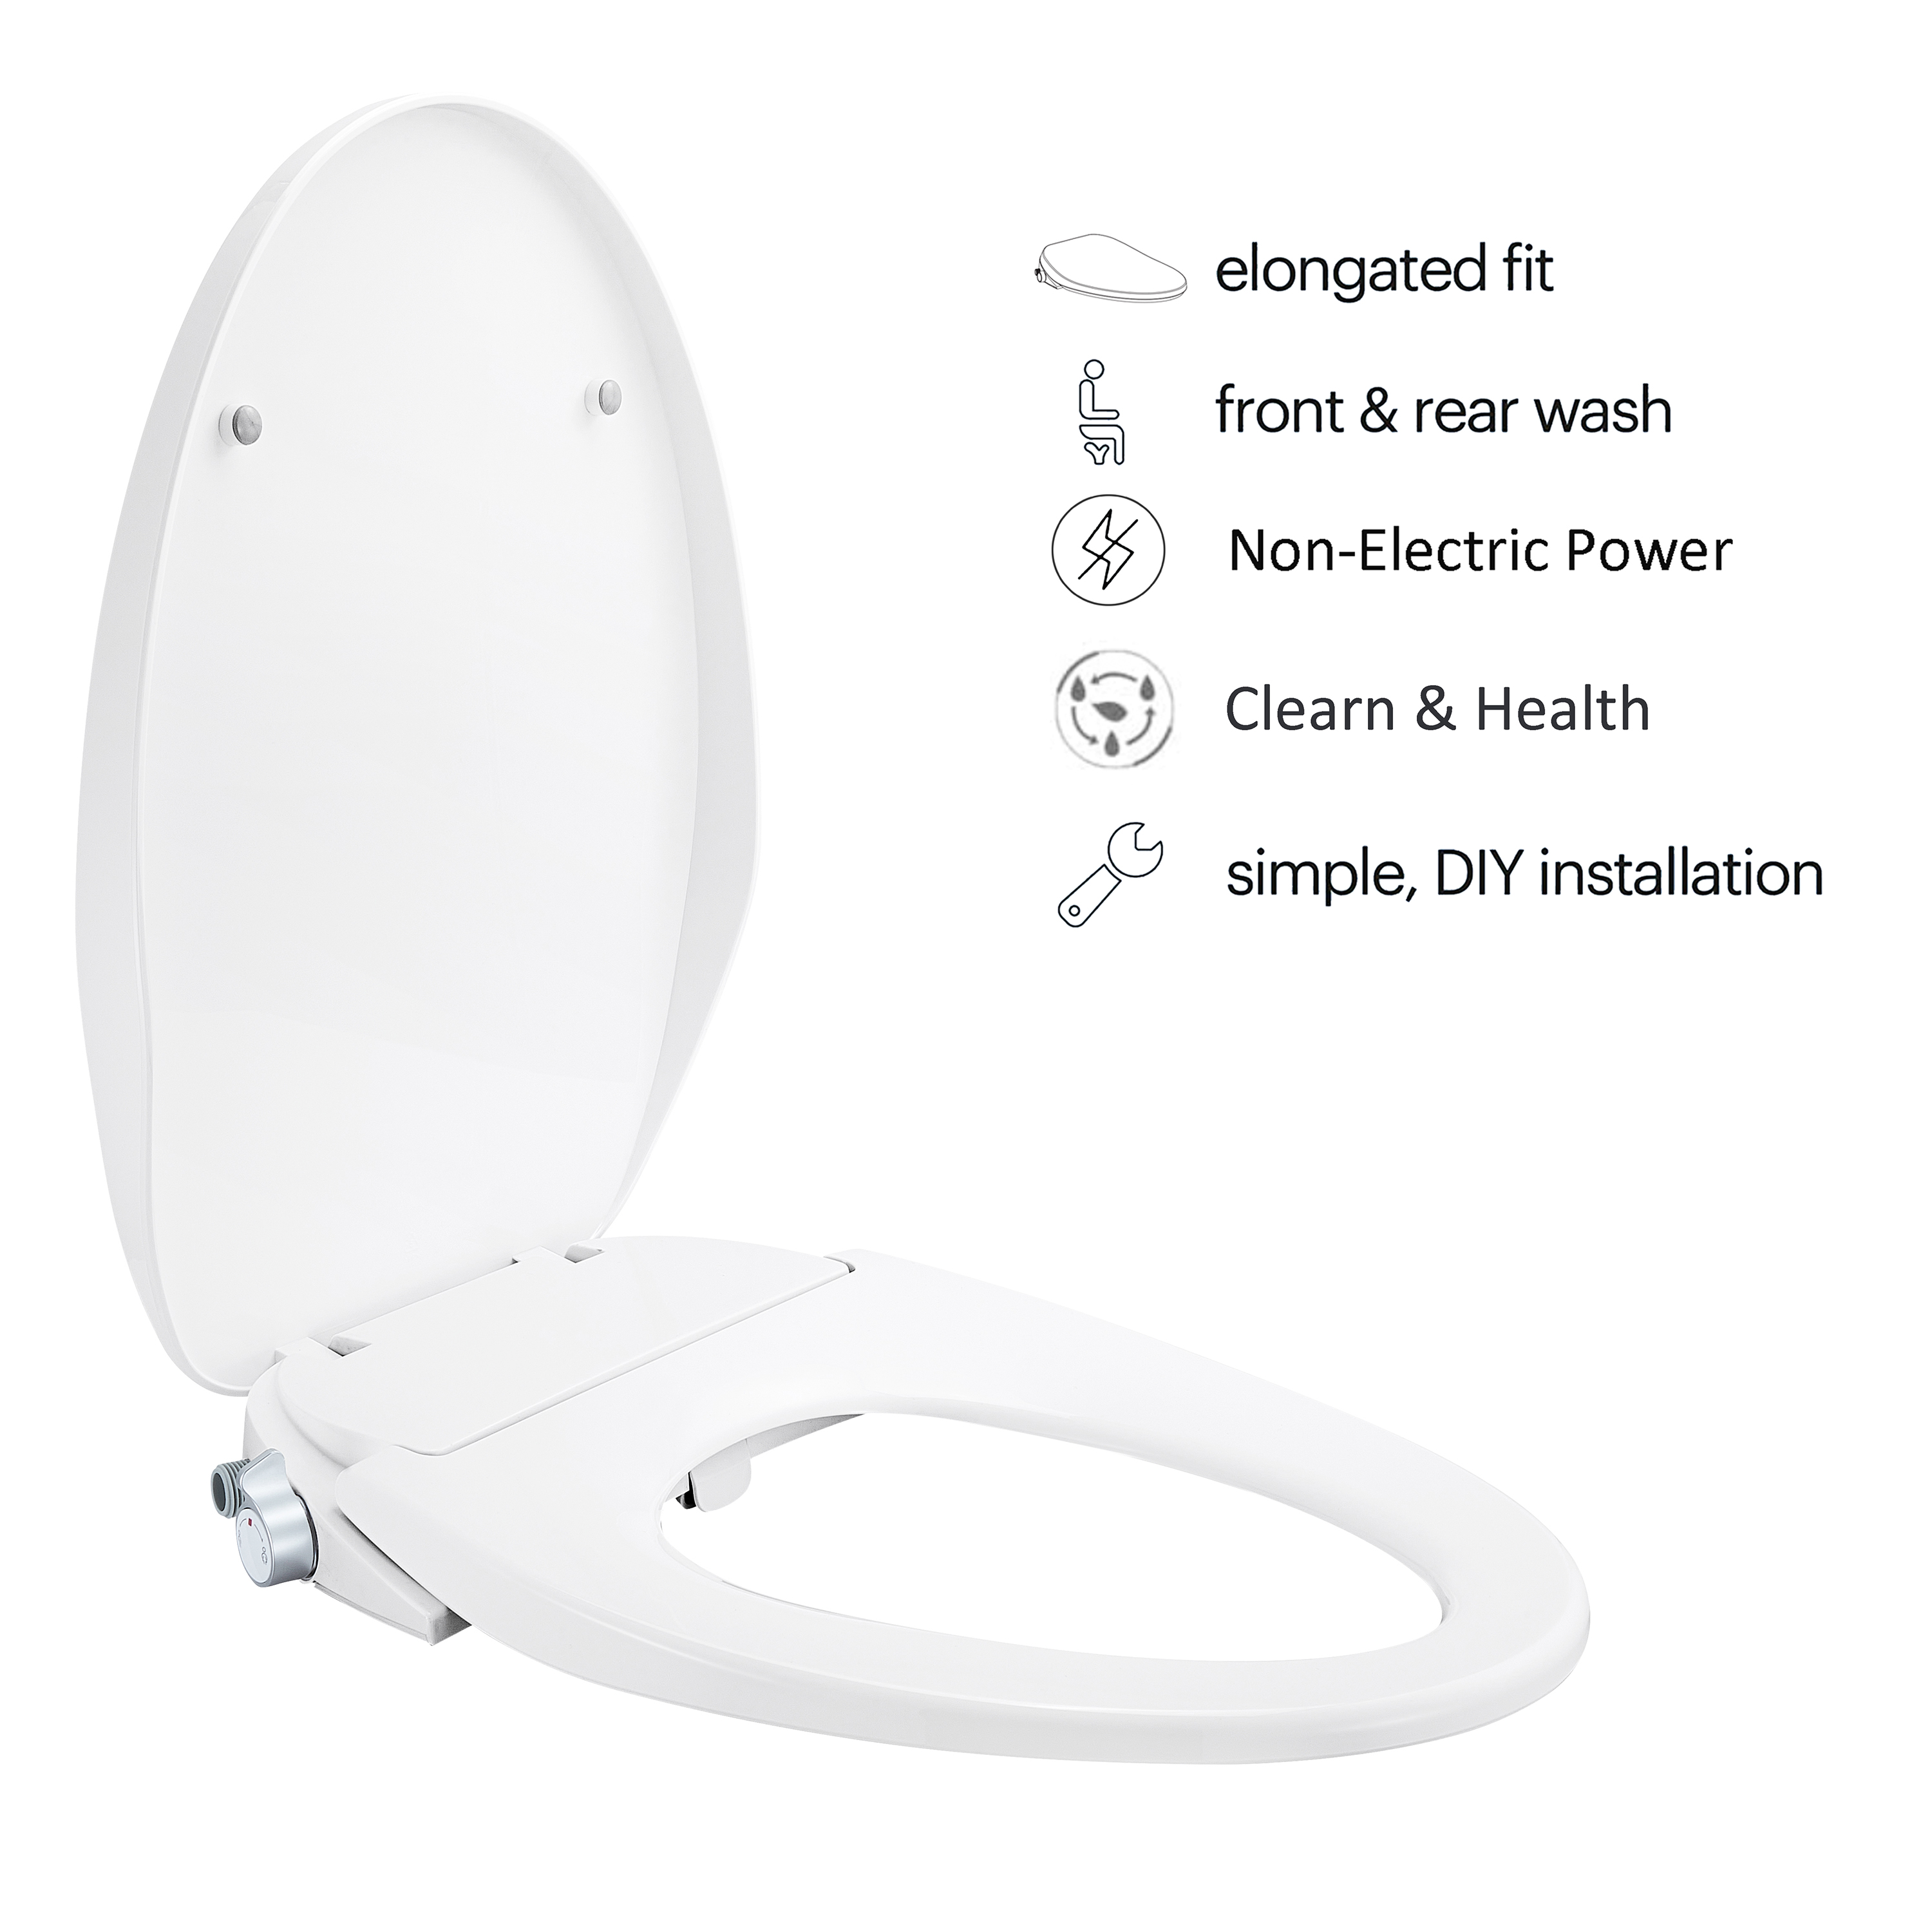 MEJE #VB-L Abattant WC non électrique pour bidet, convient aux toilettes allongées, blanc – Double buse avec pulvérisateurs réglables, installation facile…